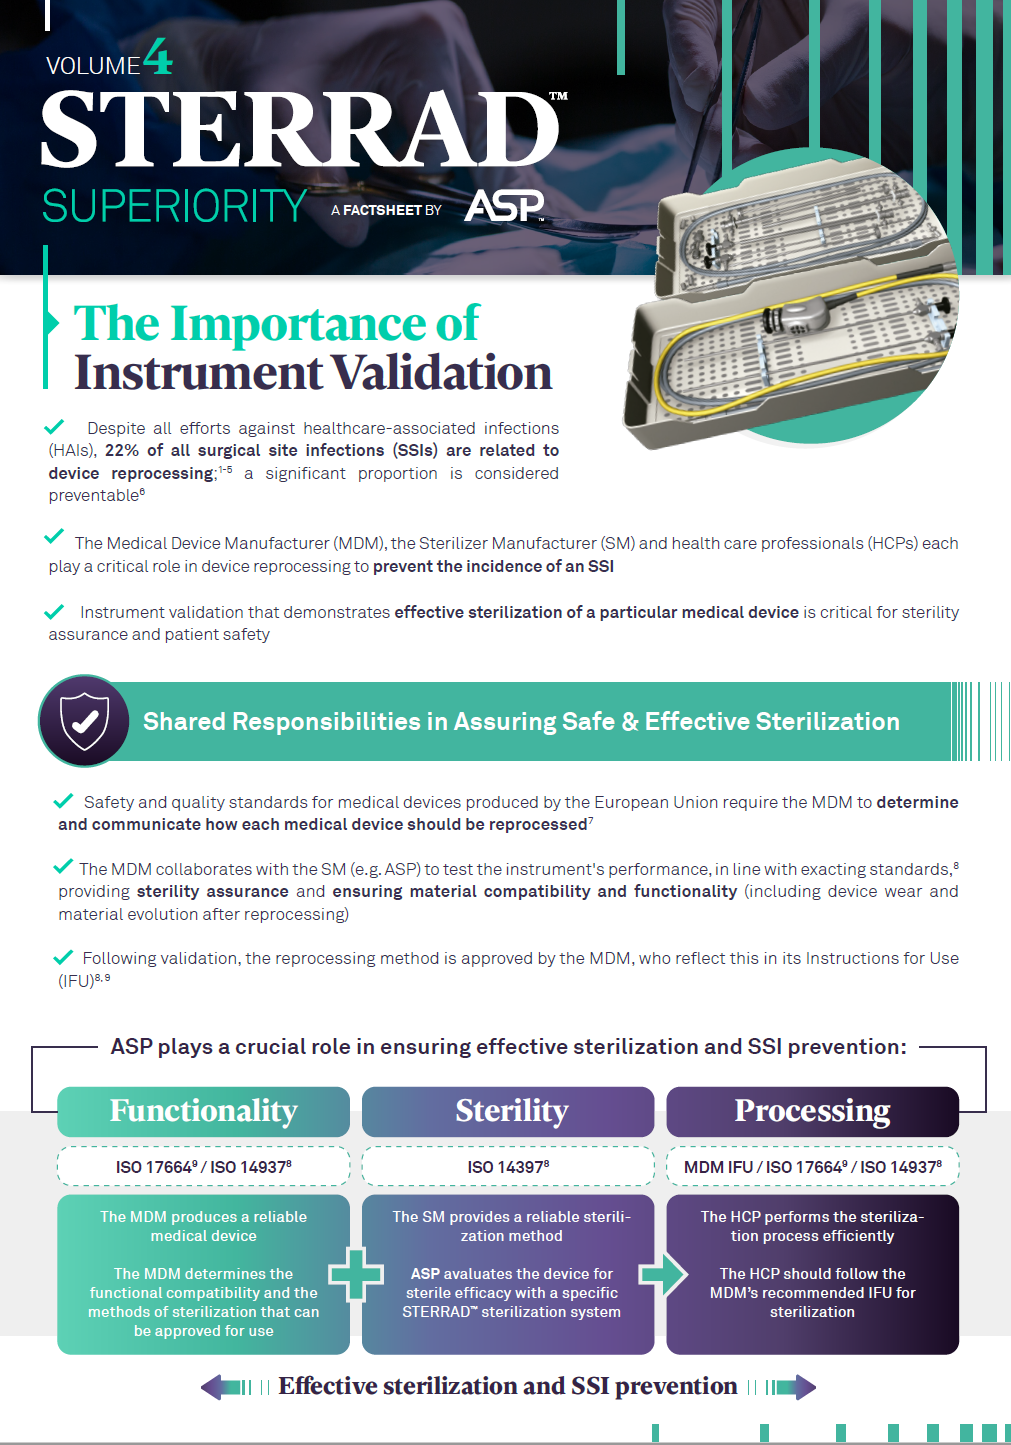 Instrument Validation